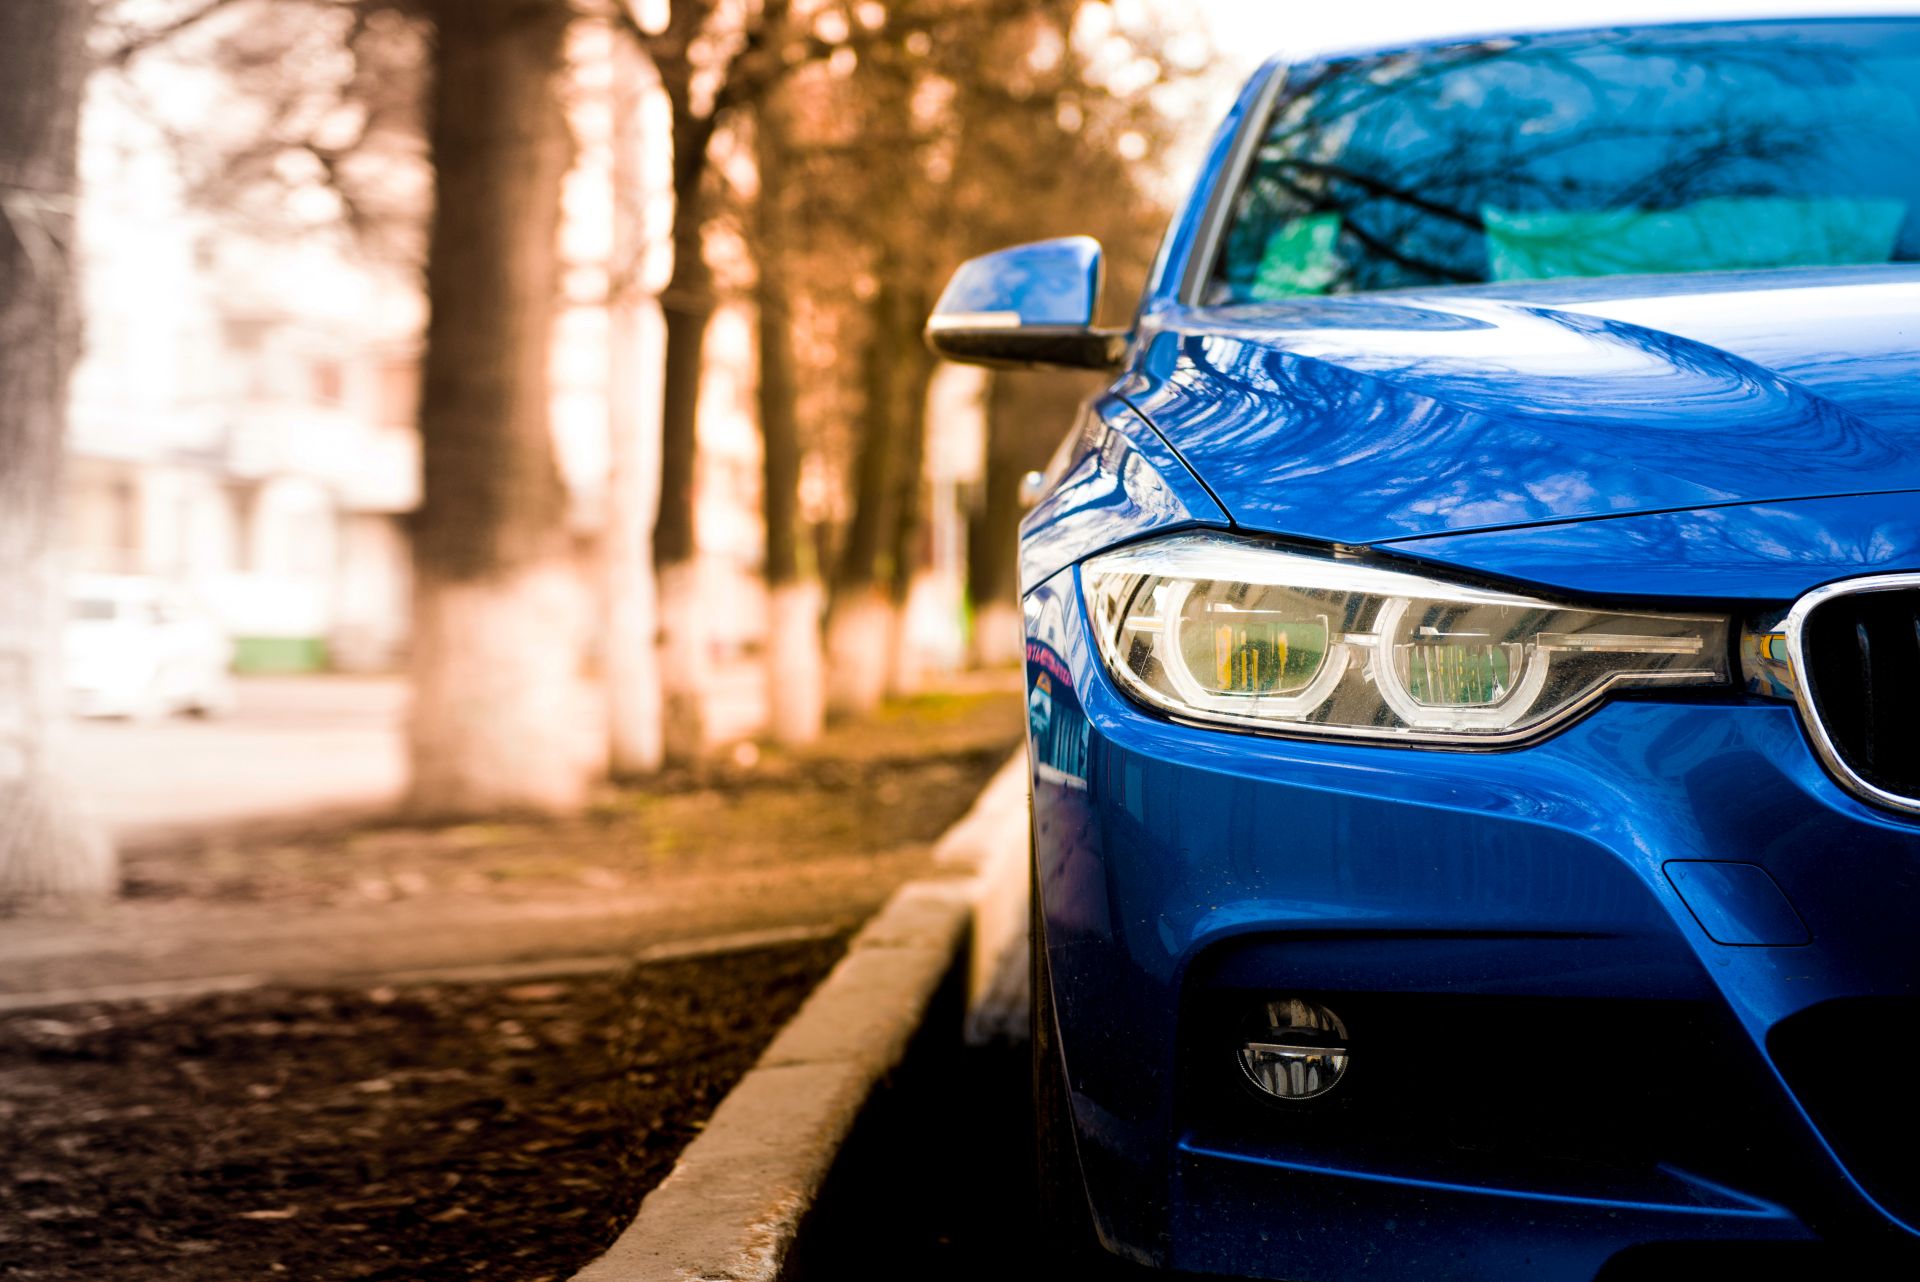 BMW: „Wer die Zukunft aktiv gestaltet, sichert sich entscheidenden Wettbewerbsvorsprung“